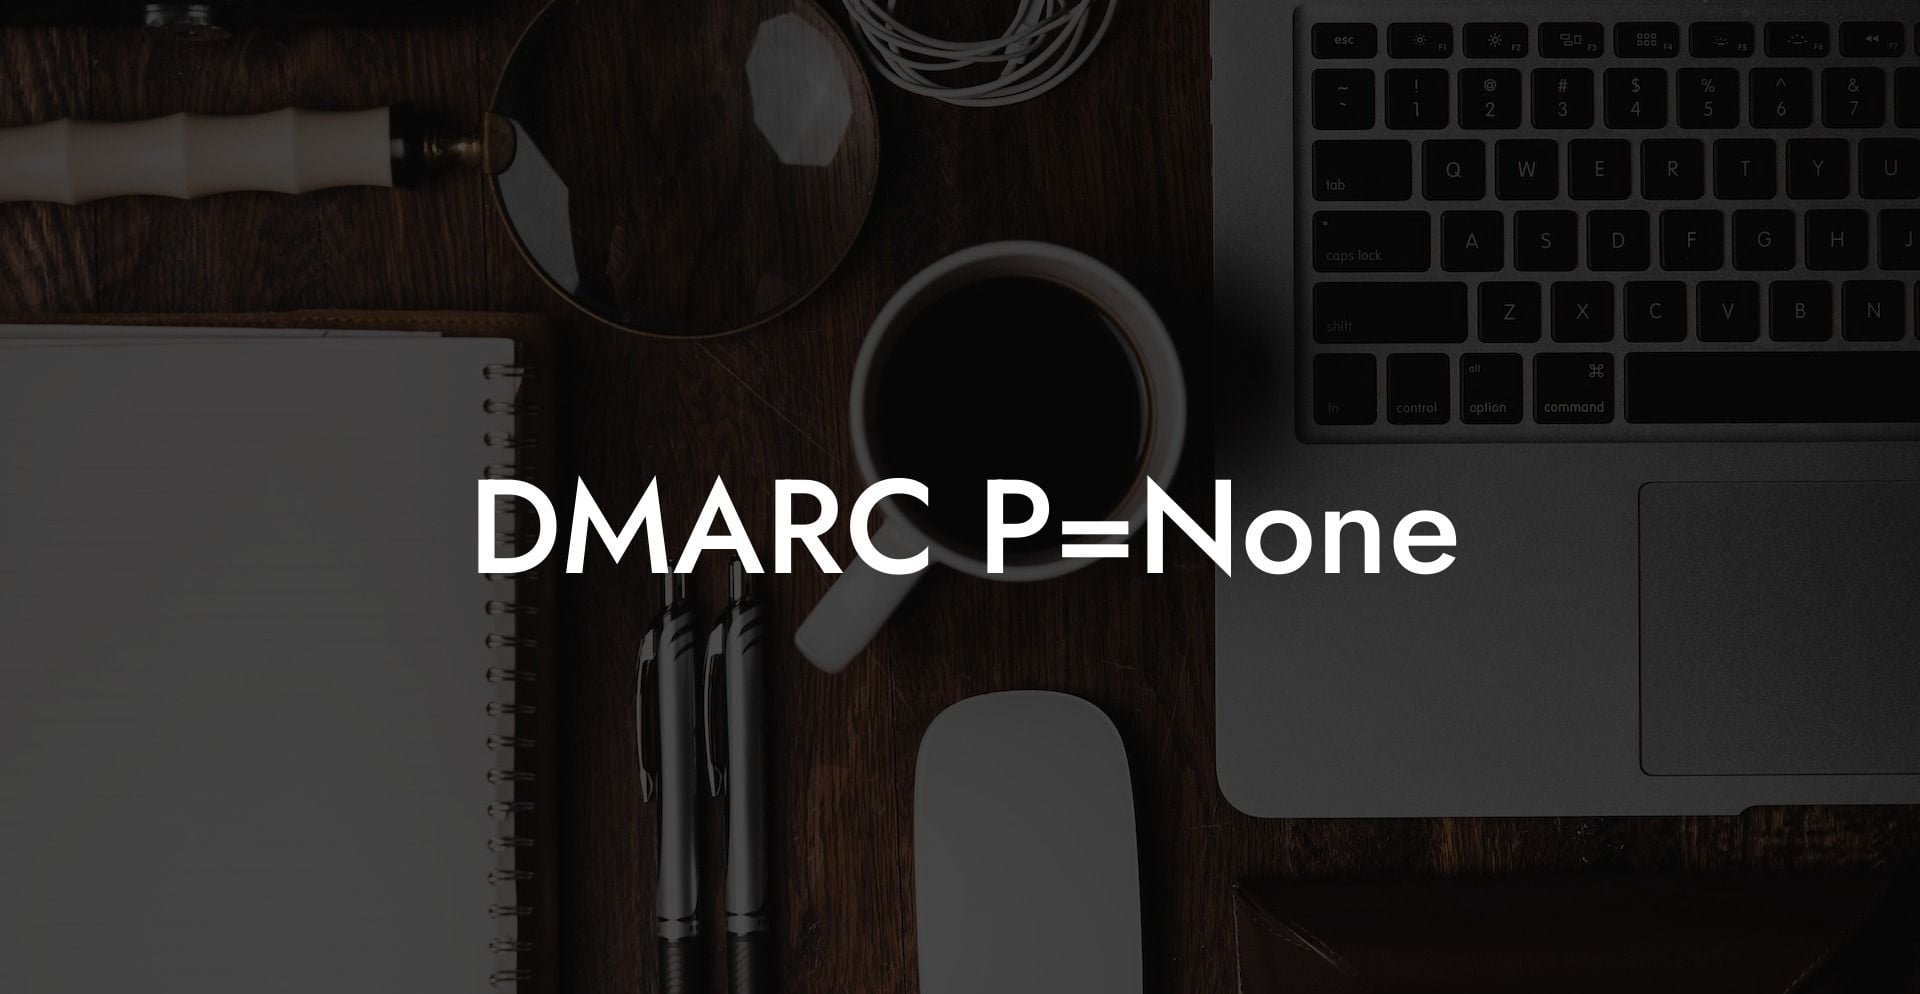 DMARC P=None